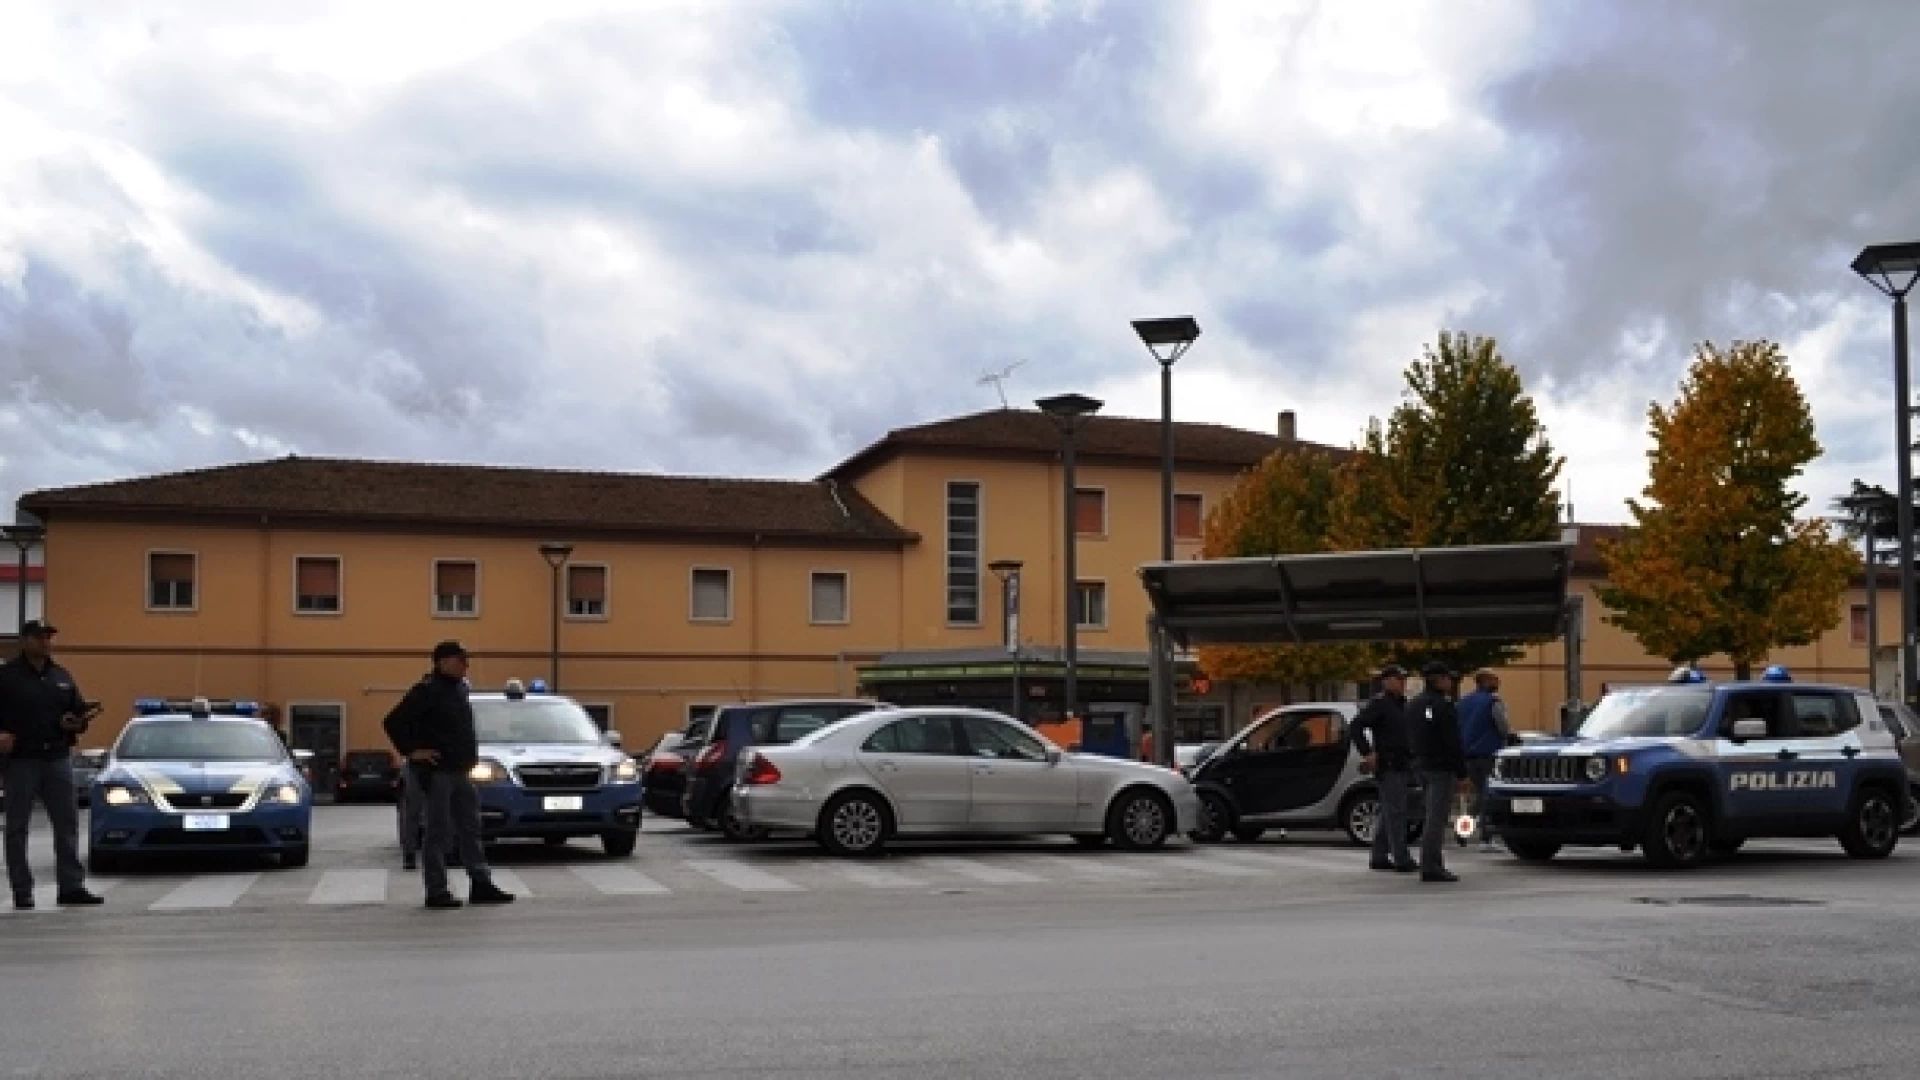 Isernia: week-end di controlli per la polizia. Fermato giovane 24enne con stupefacenti presso il terminal autobus della città.